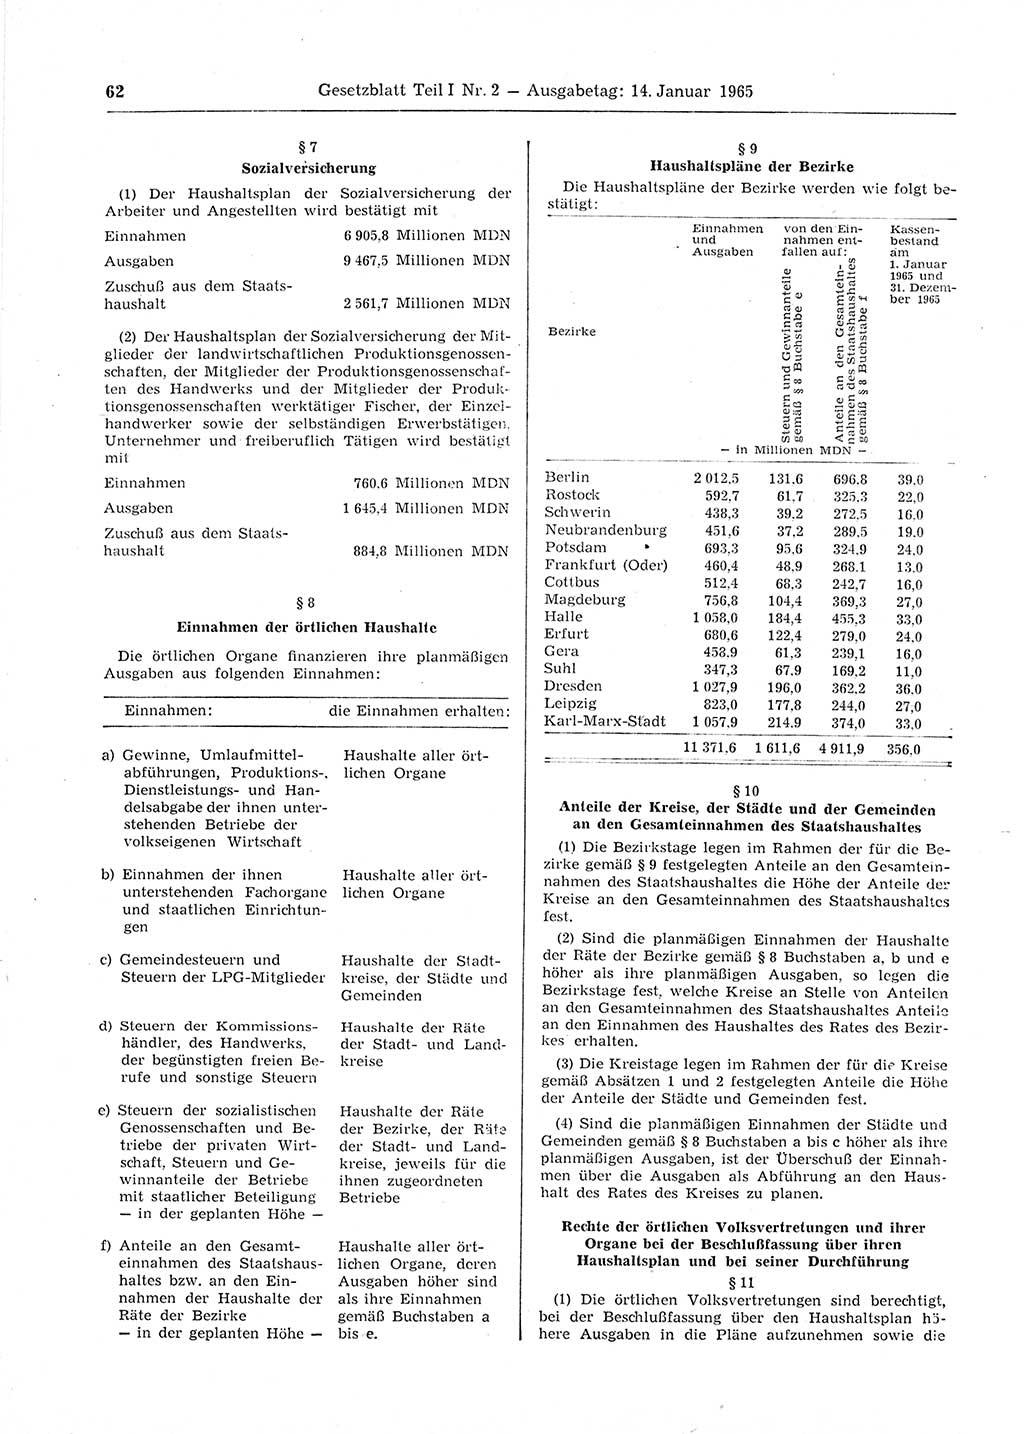 Gesetzblatt (GBl.) der Deutschen Demokratischen Republik (DDR) Teil Ⅰ 1965, Seite 62 (GBl. DDR Ⅰ 1965, S. 62)